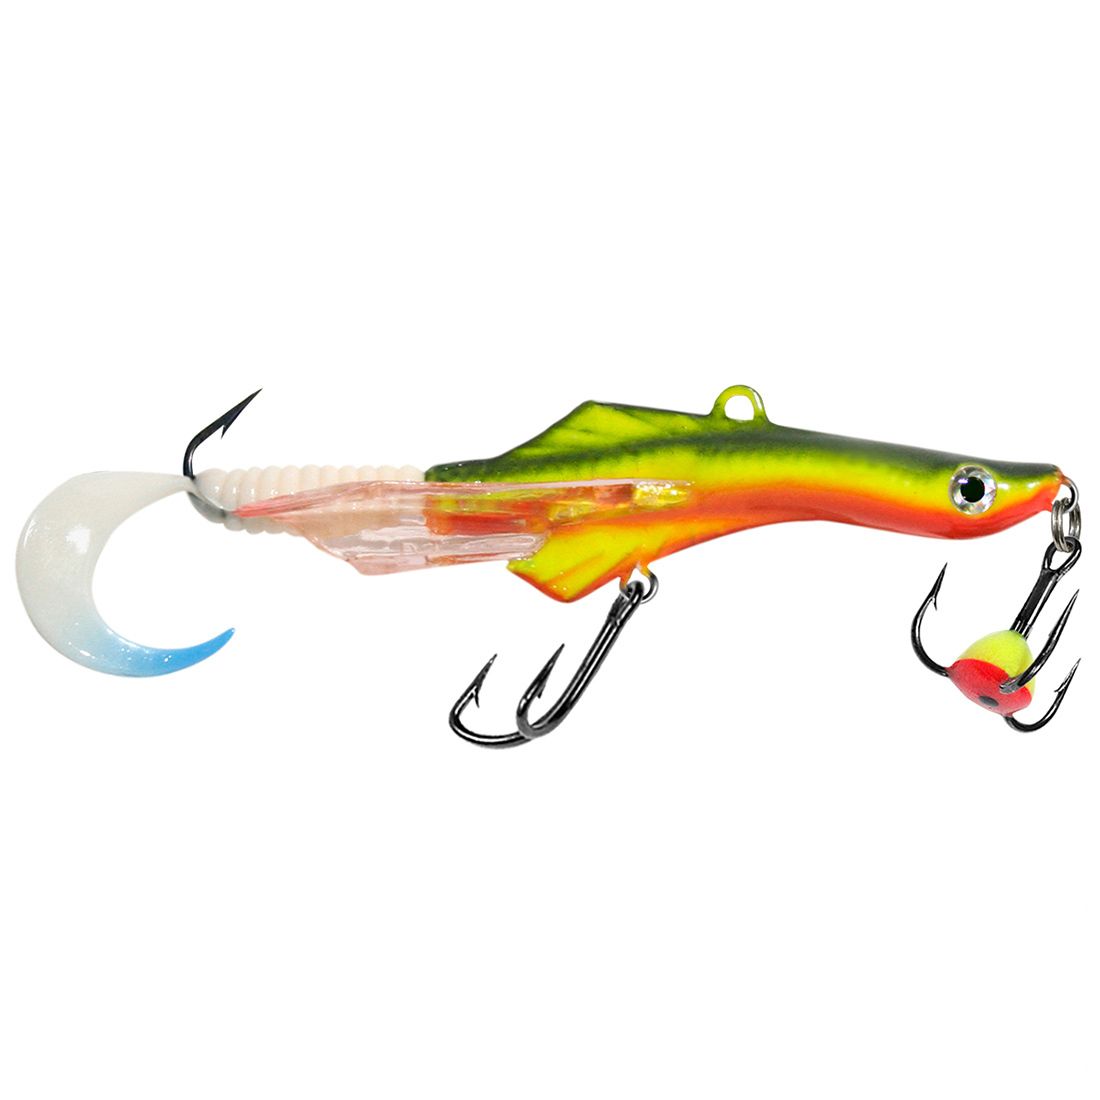 Балансир для рыбалки AQUA TRITON-5 58mm цвет 144 флуоресцентный болотник, 1 штука